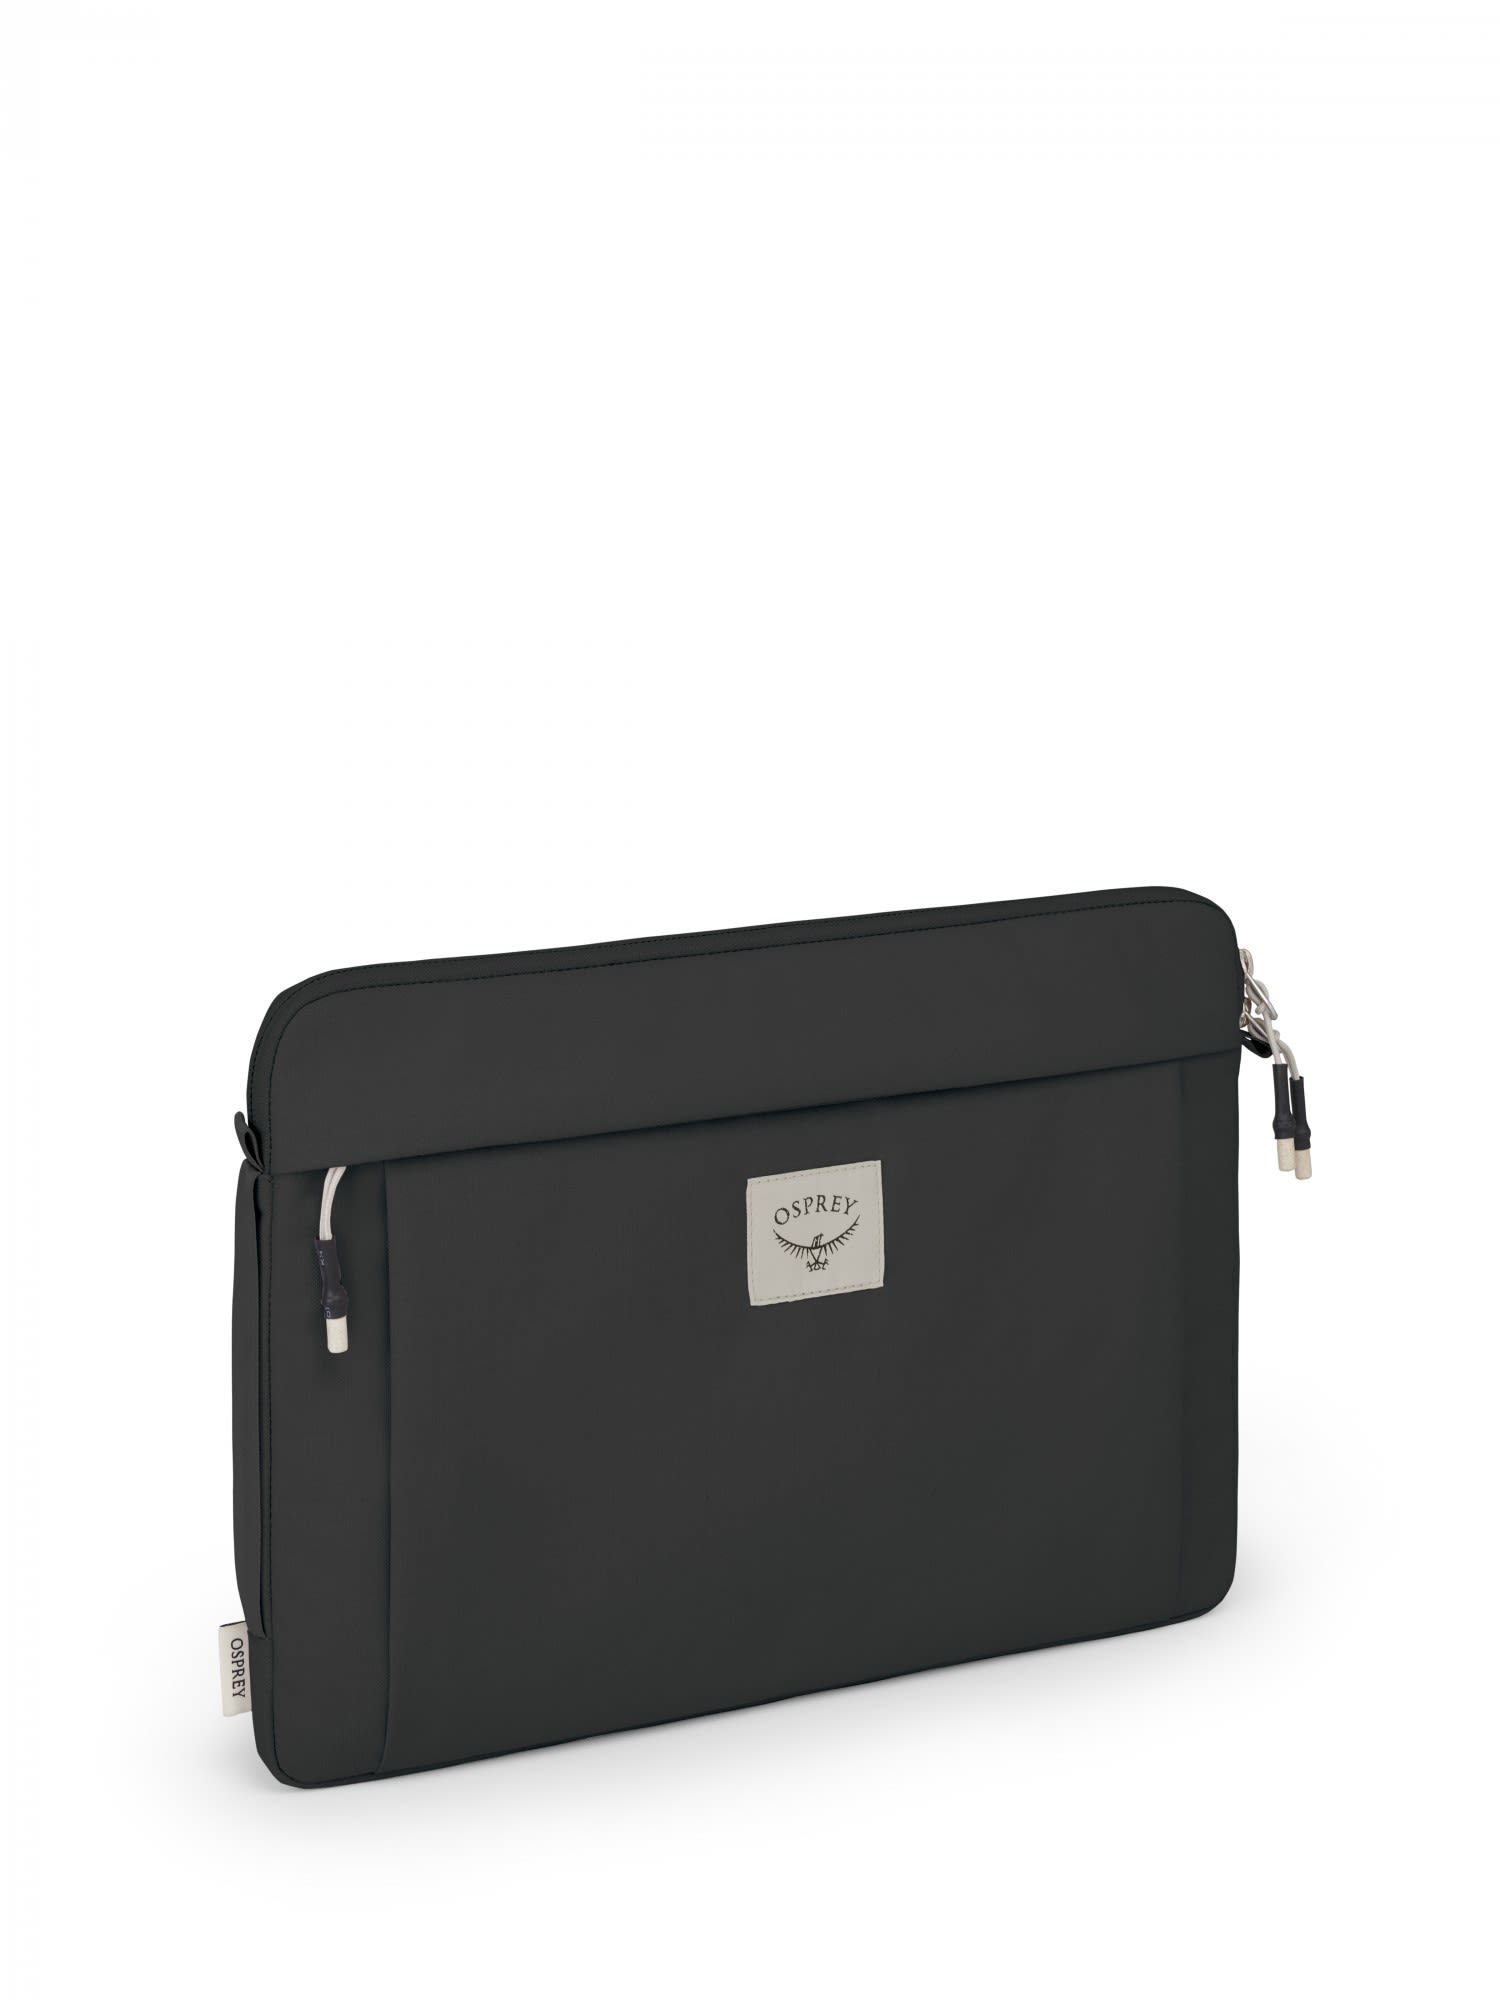 Osprey Arcane Laptop Sleeve 15 Schwarz- Notebooktaschen- Grsse One Size - Farbe Stonewash Black